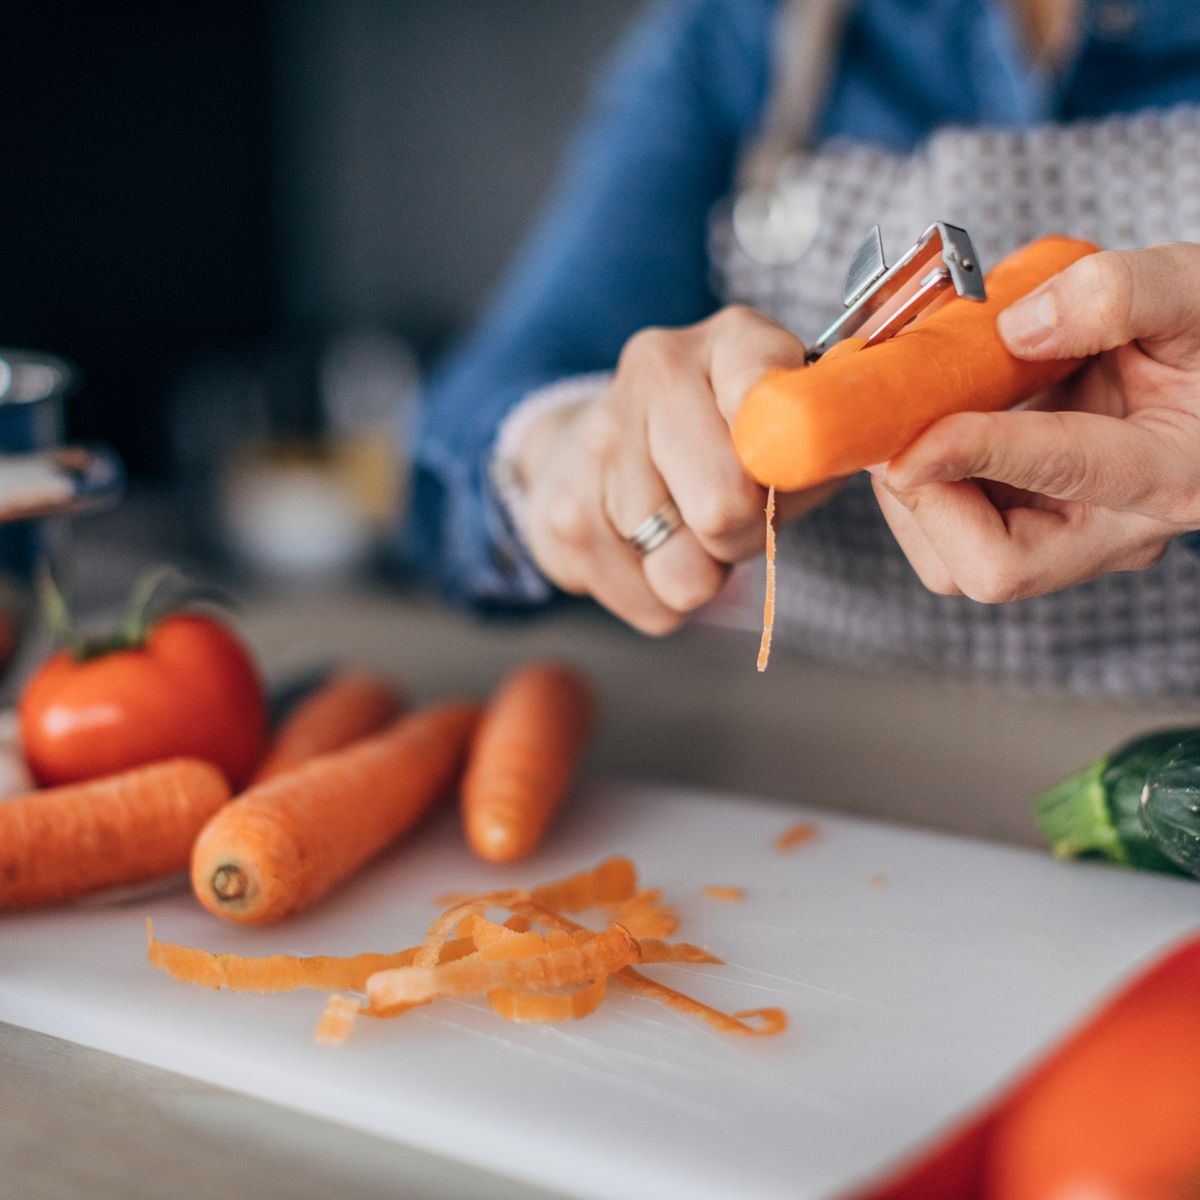 Mejores cortadores de verduras y frutas que puedes comprar este verano